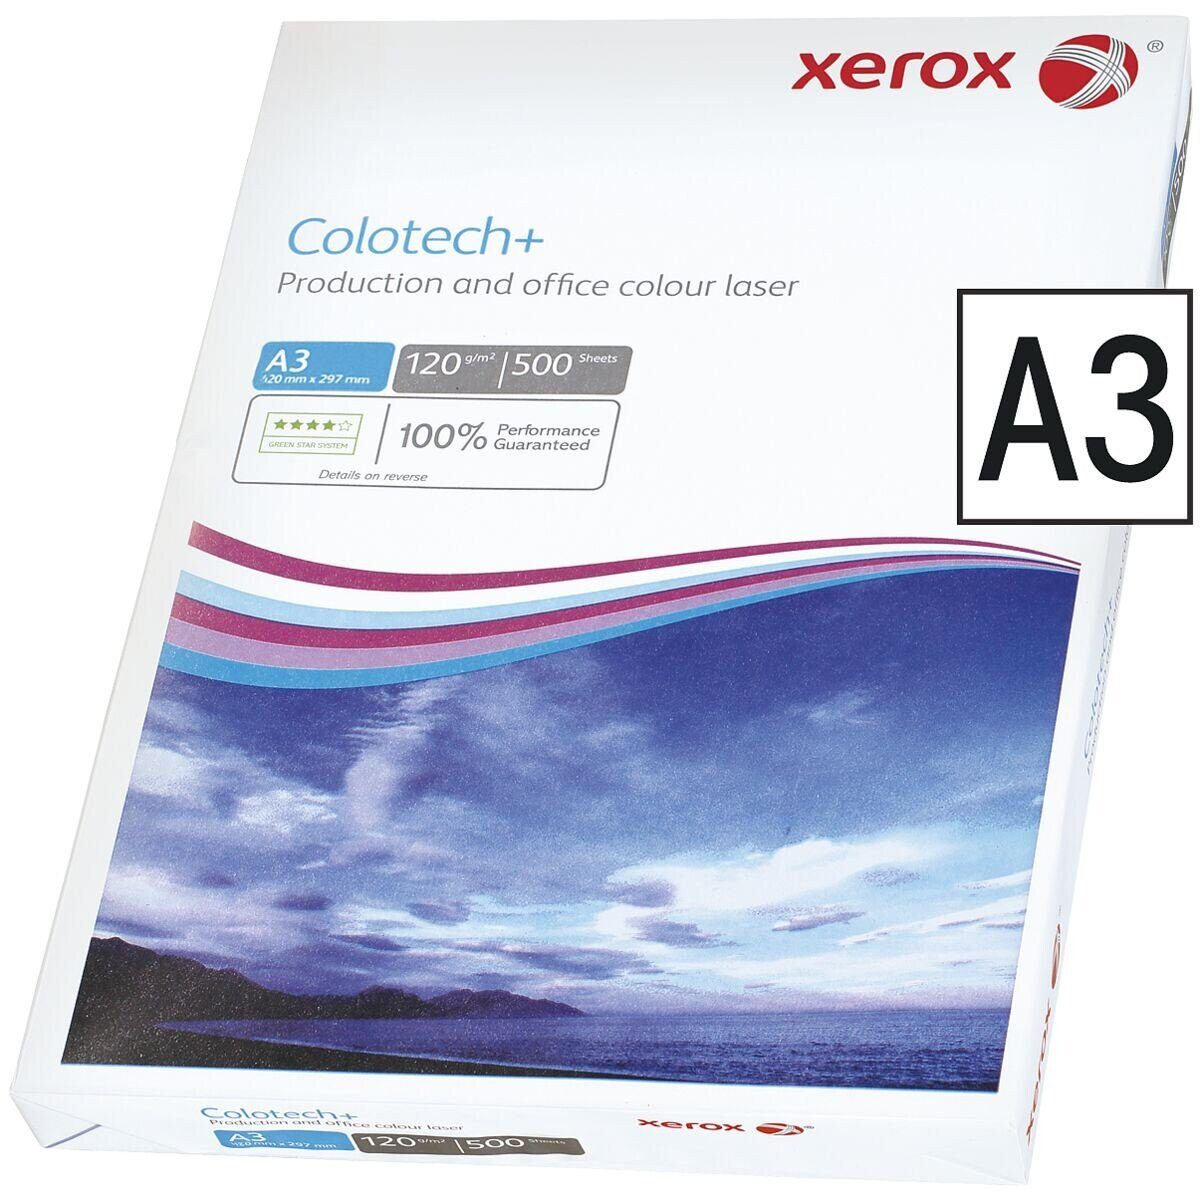 A3, Blatt Xerox 500 Colotech+, Farblaser-Druckerpapier 120 g/m², Format DIN